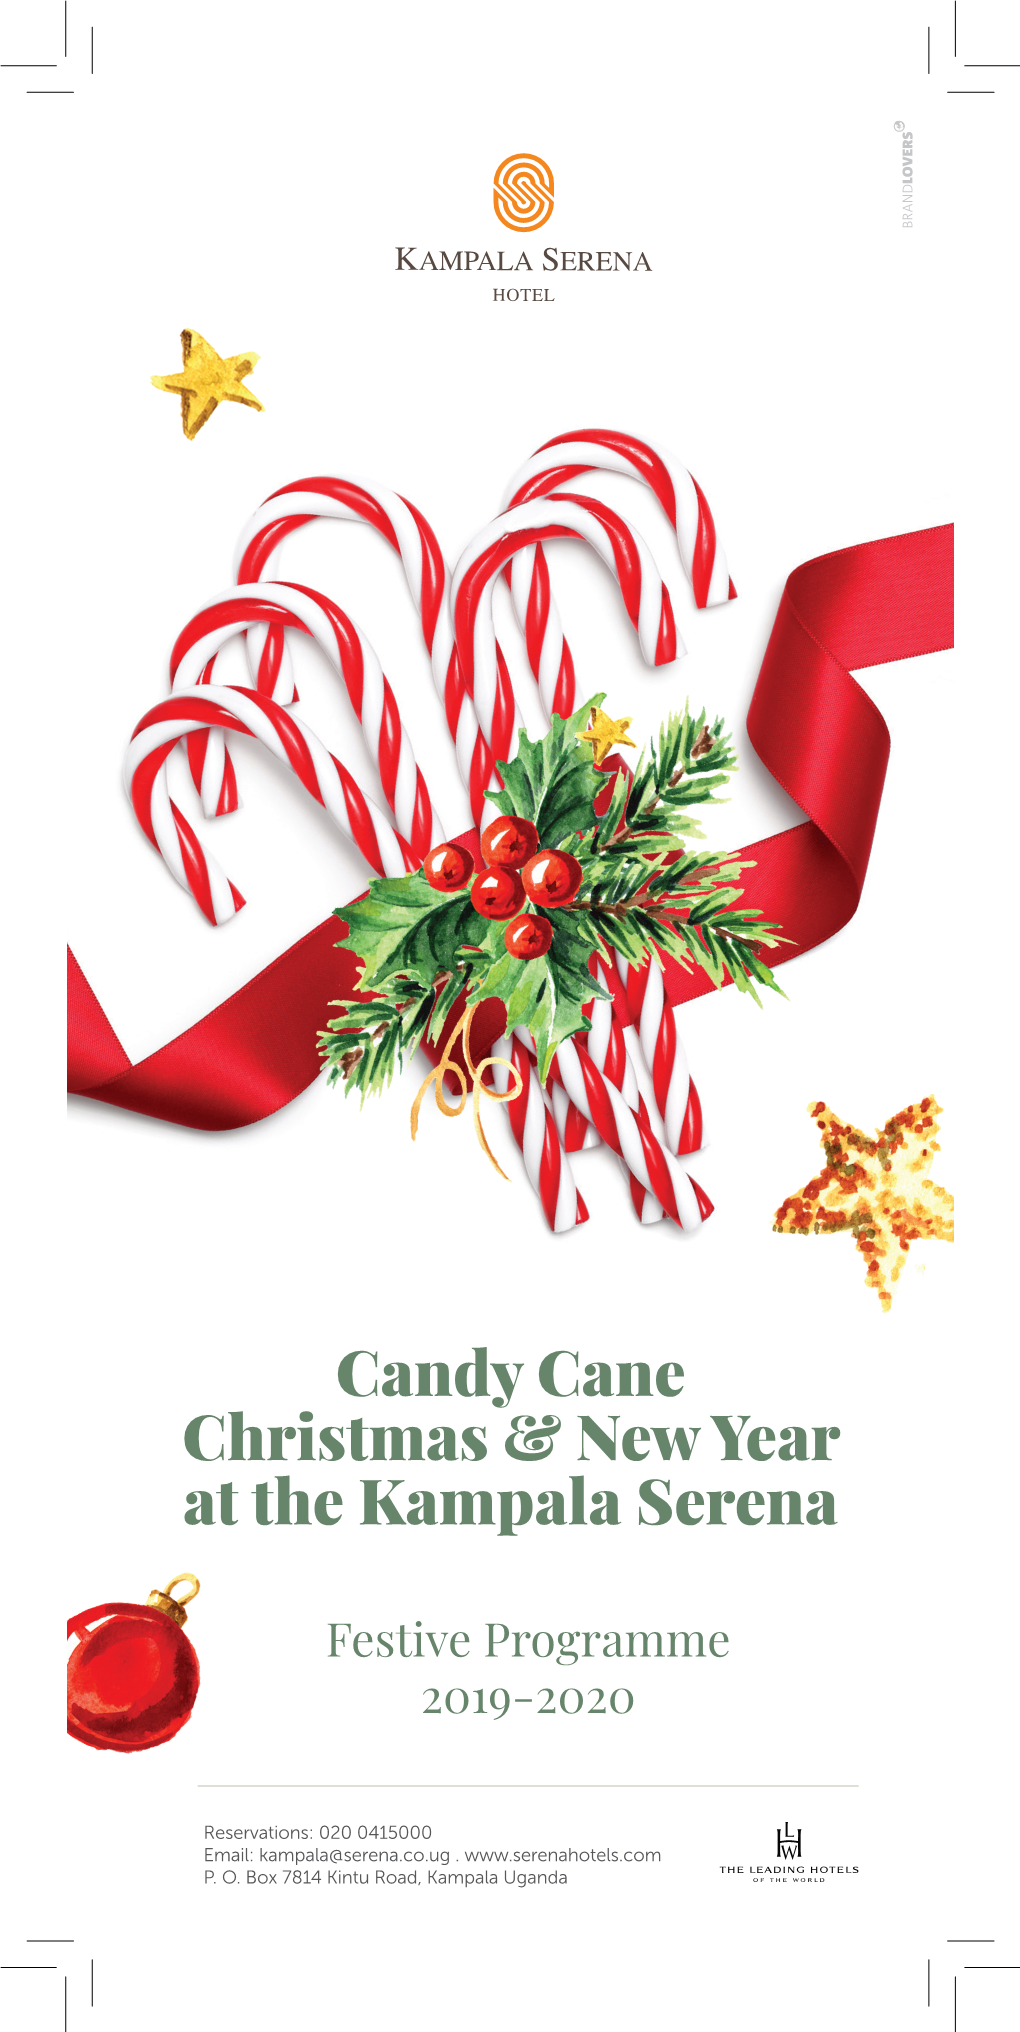 Candy Cane Christmas & New Year at the Kampala Serena